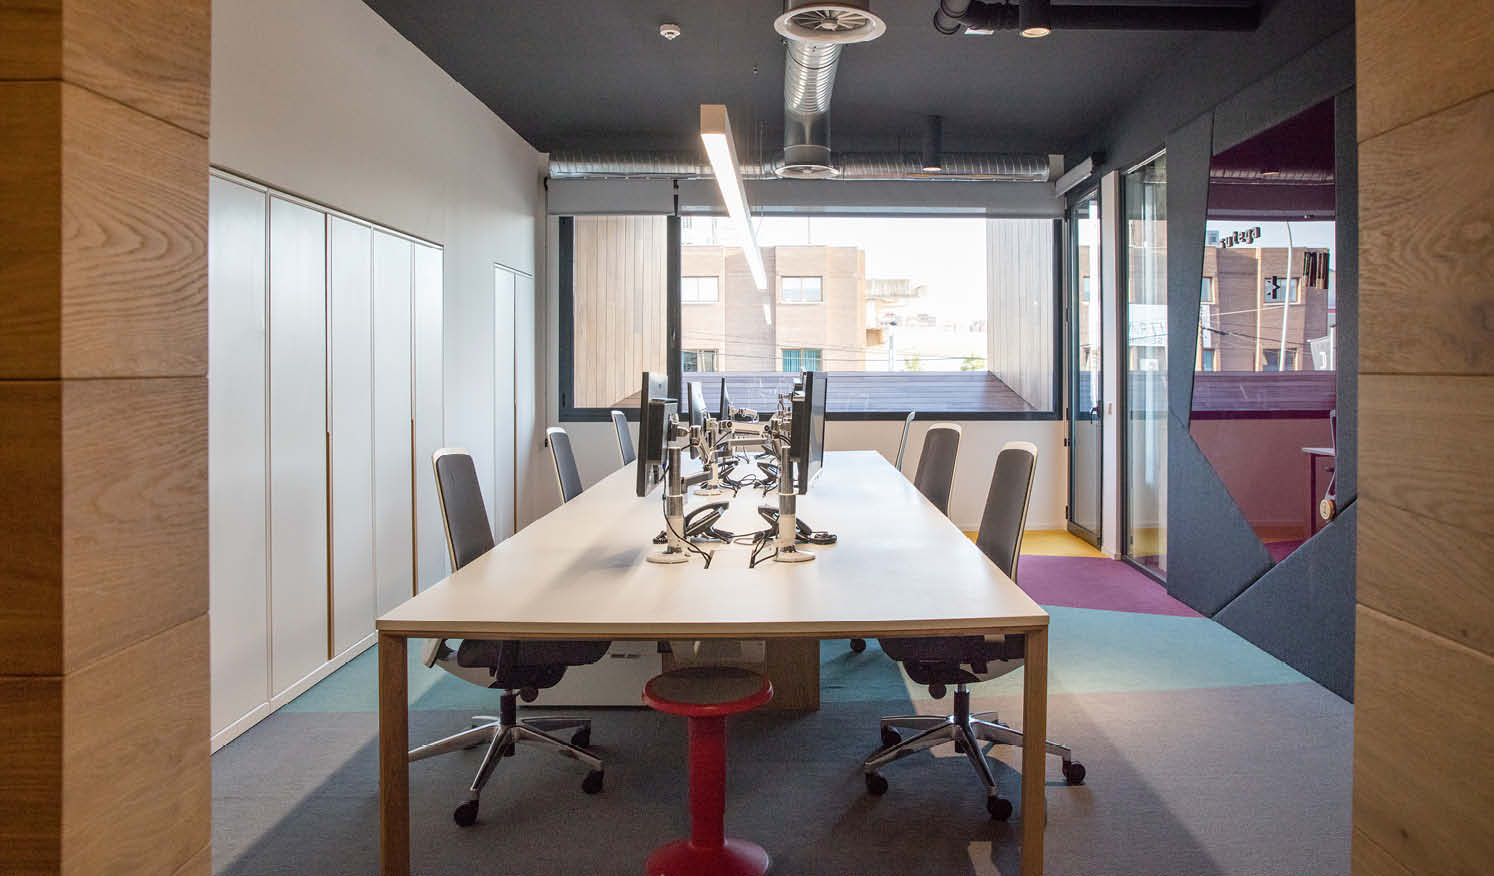 Mesas de trabajo con luz natural e iluminación horizontal